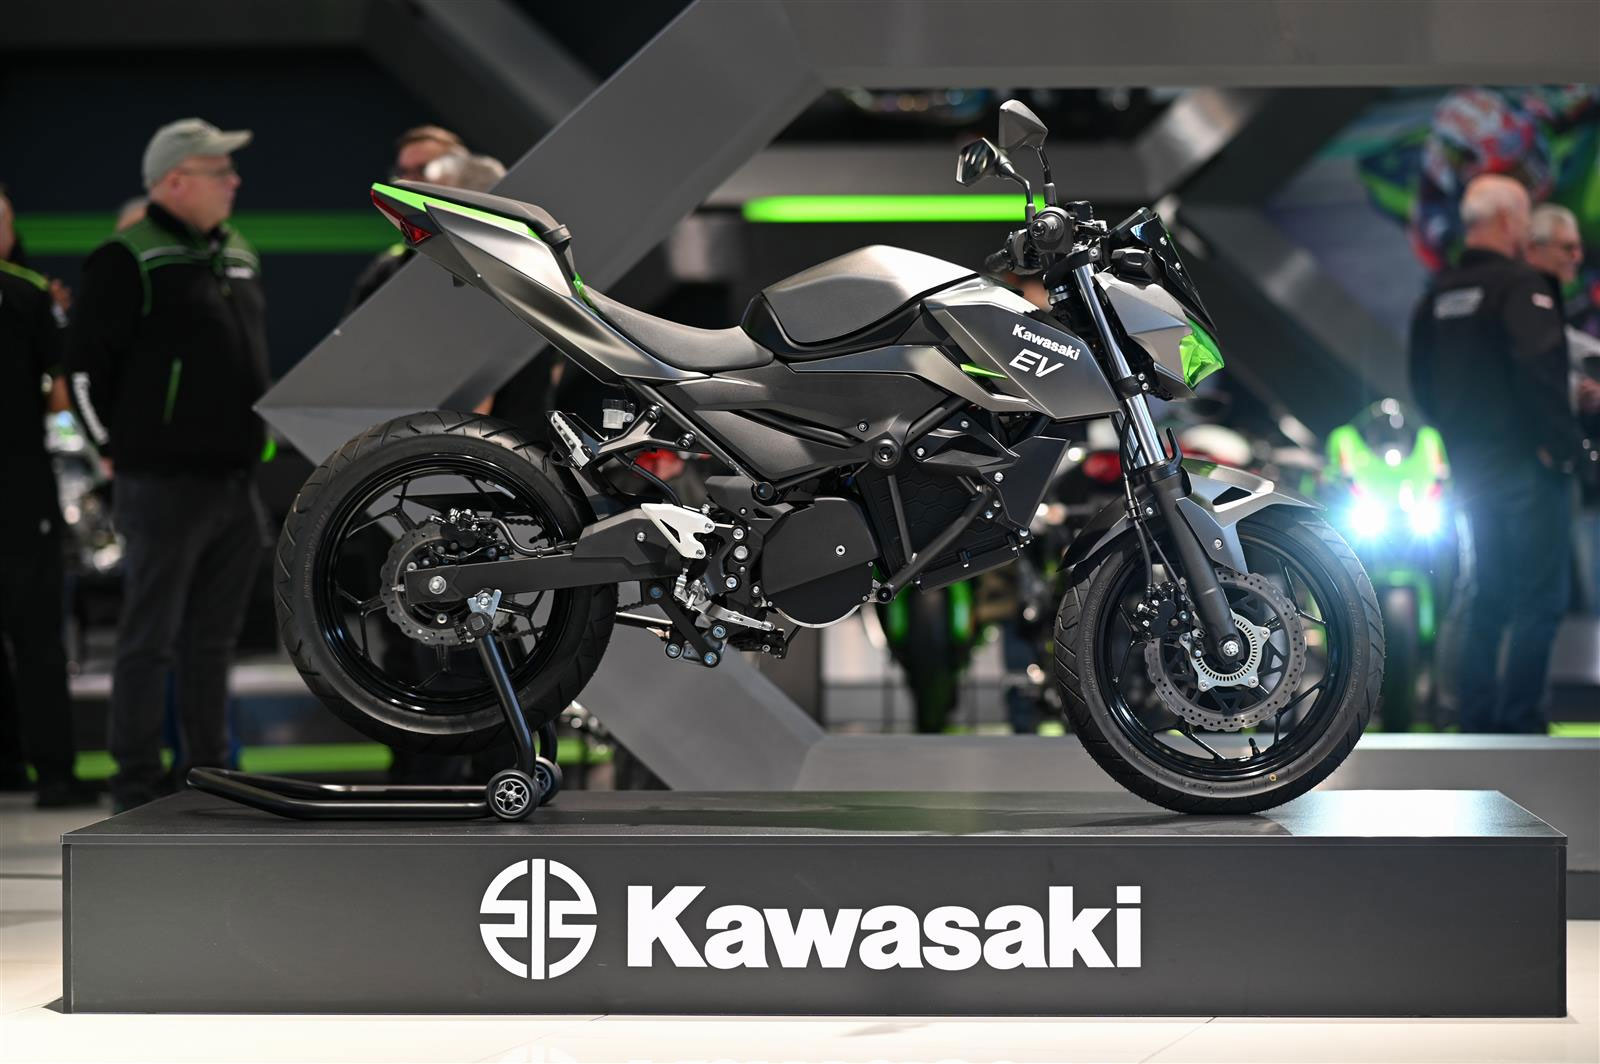 La première moto électrique Kawasaki s’expose à Intermot